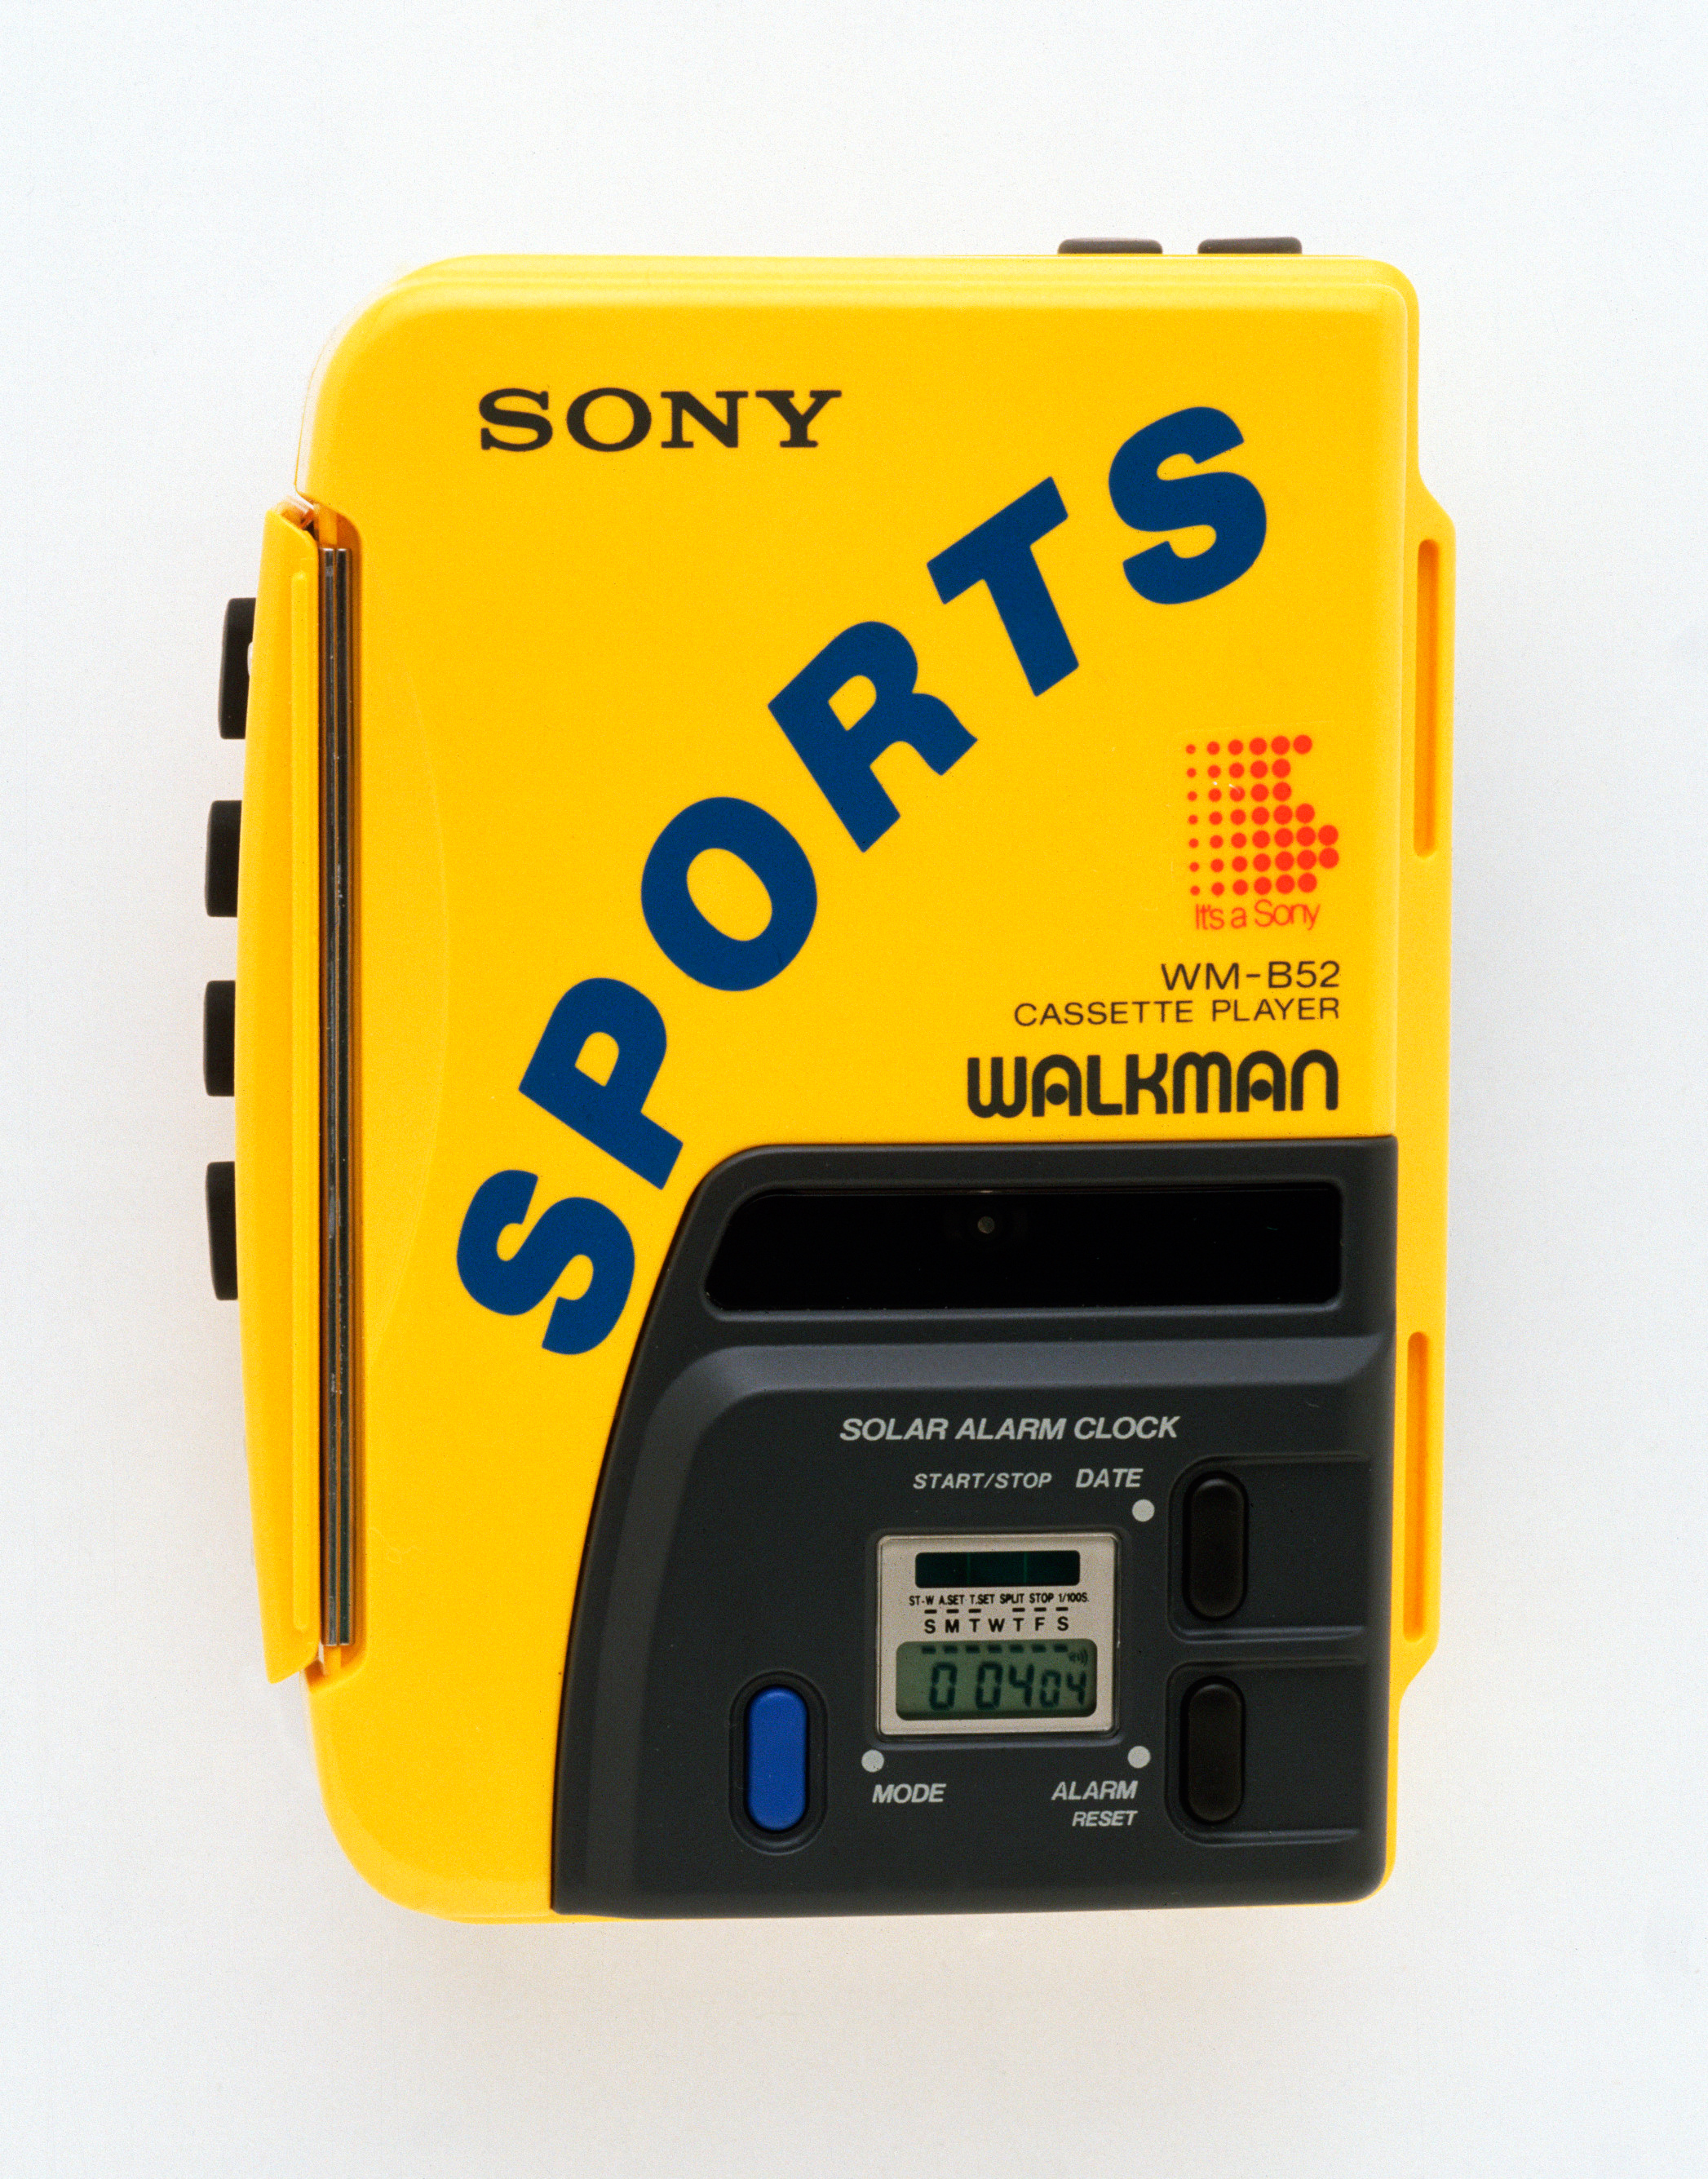 ca. 1991 Sony Walkman cassette player